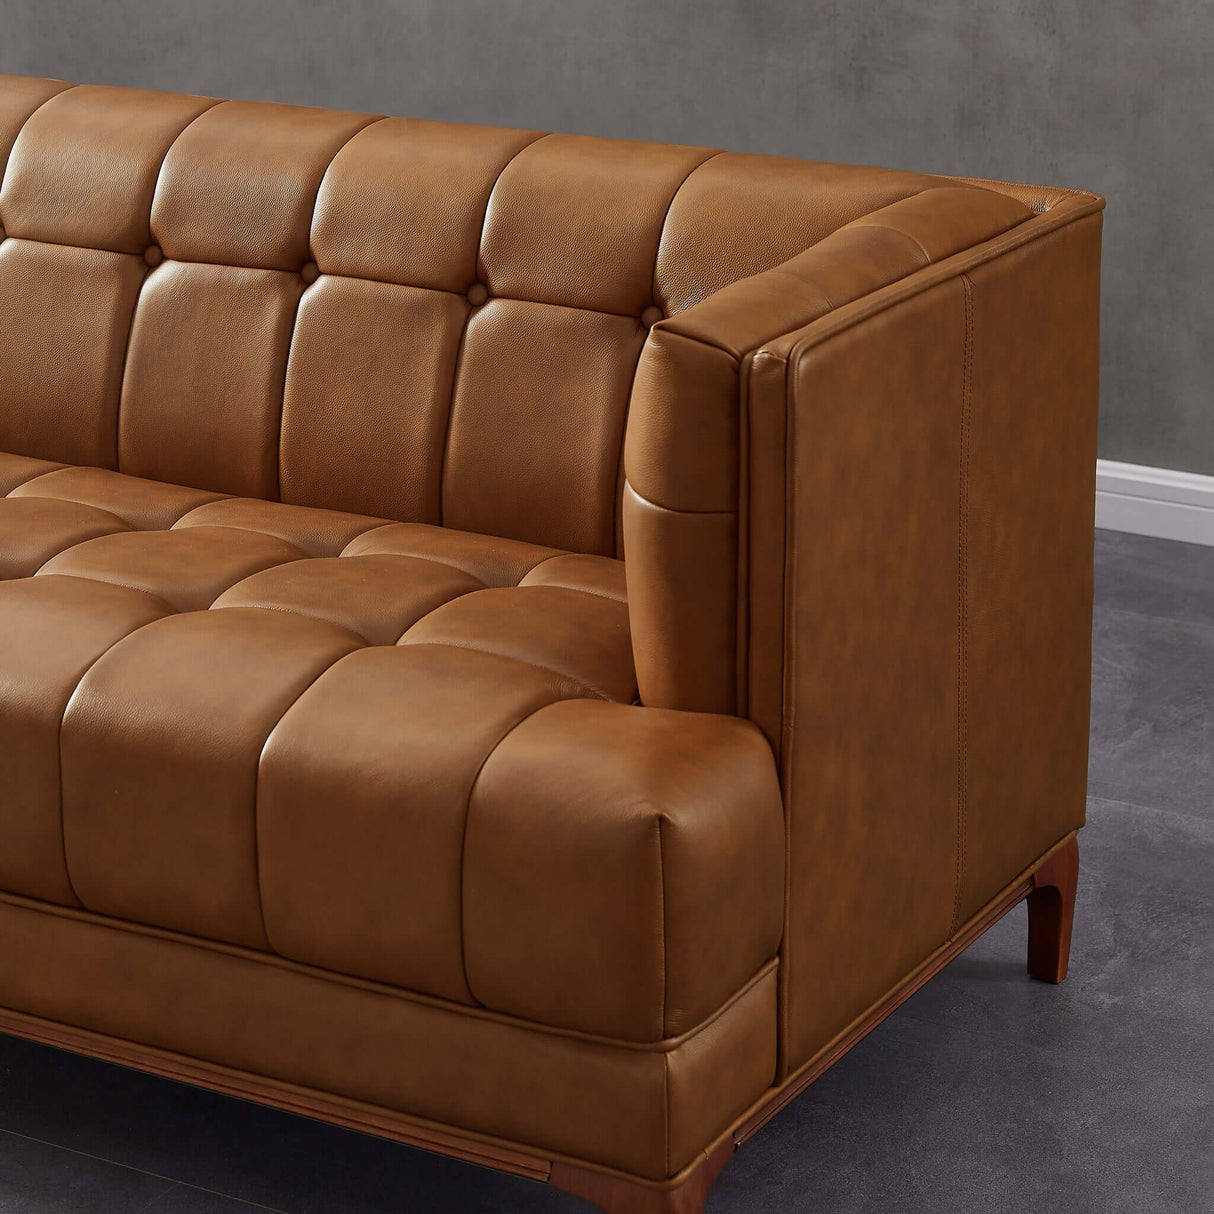 Tufted leather sofa set